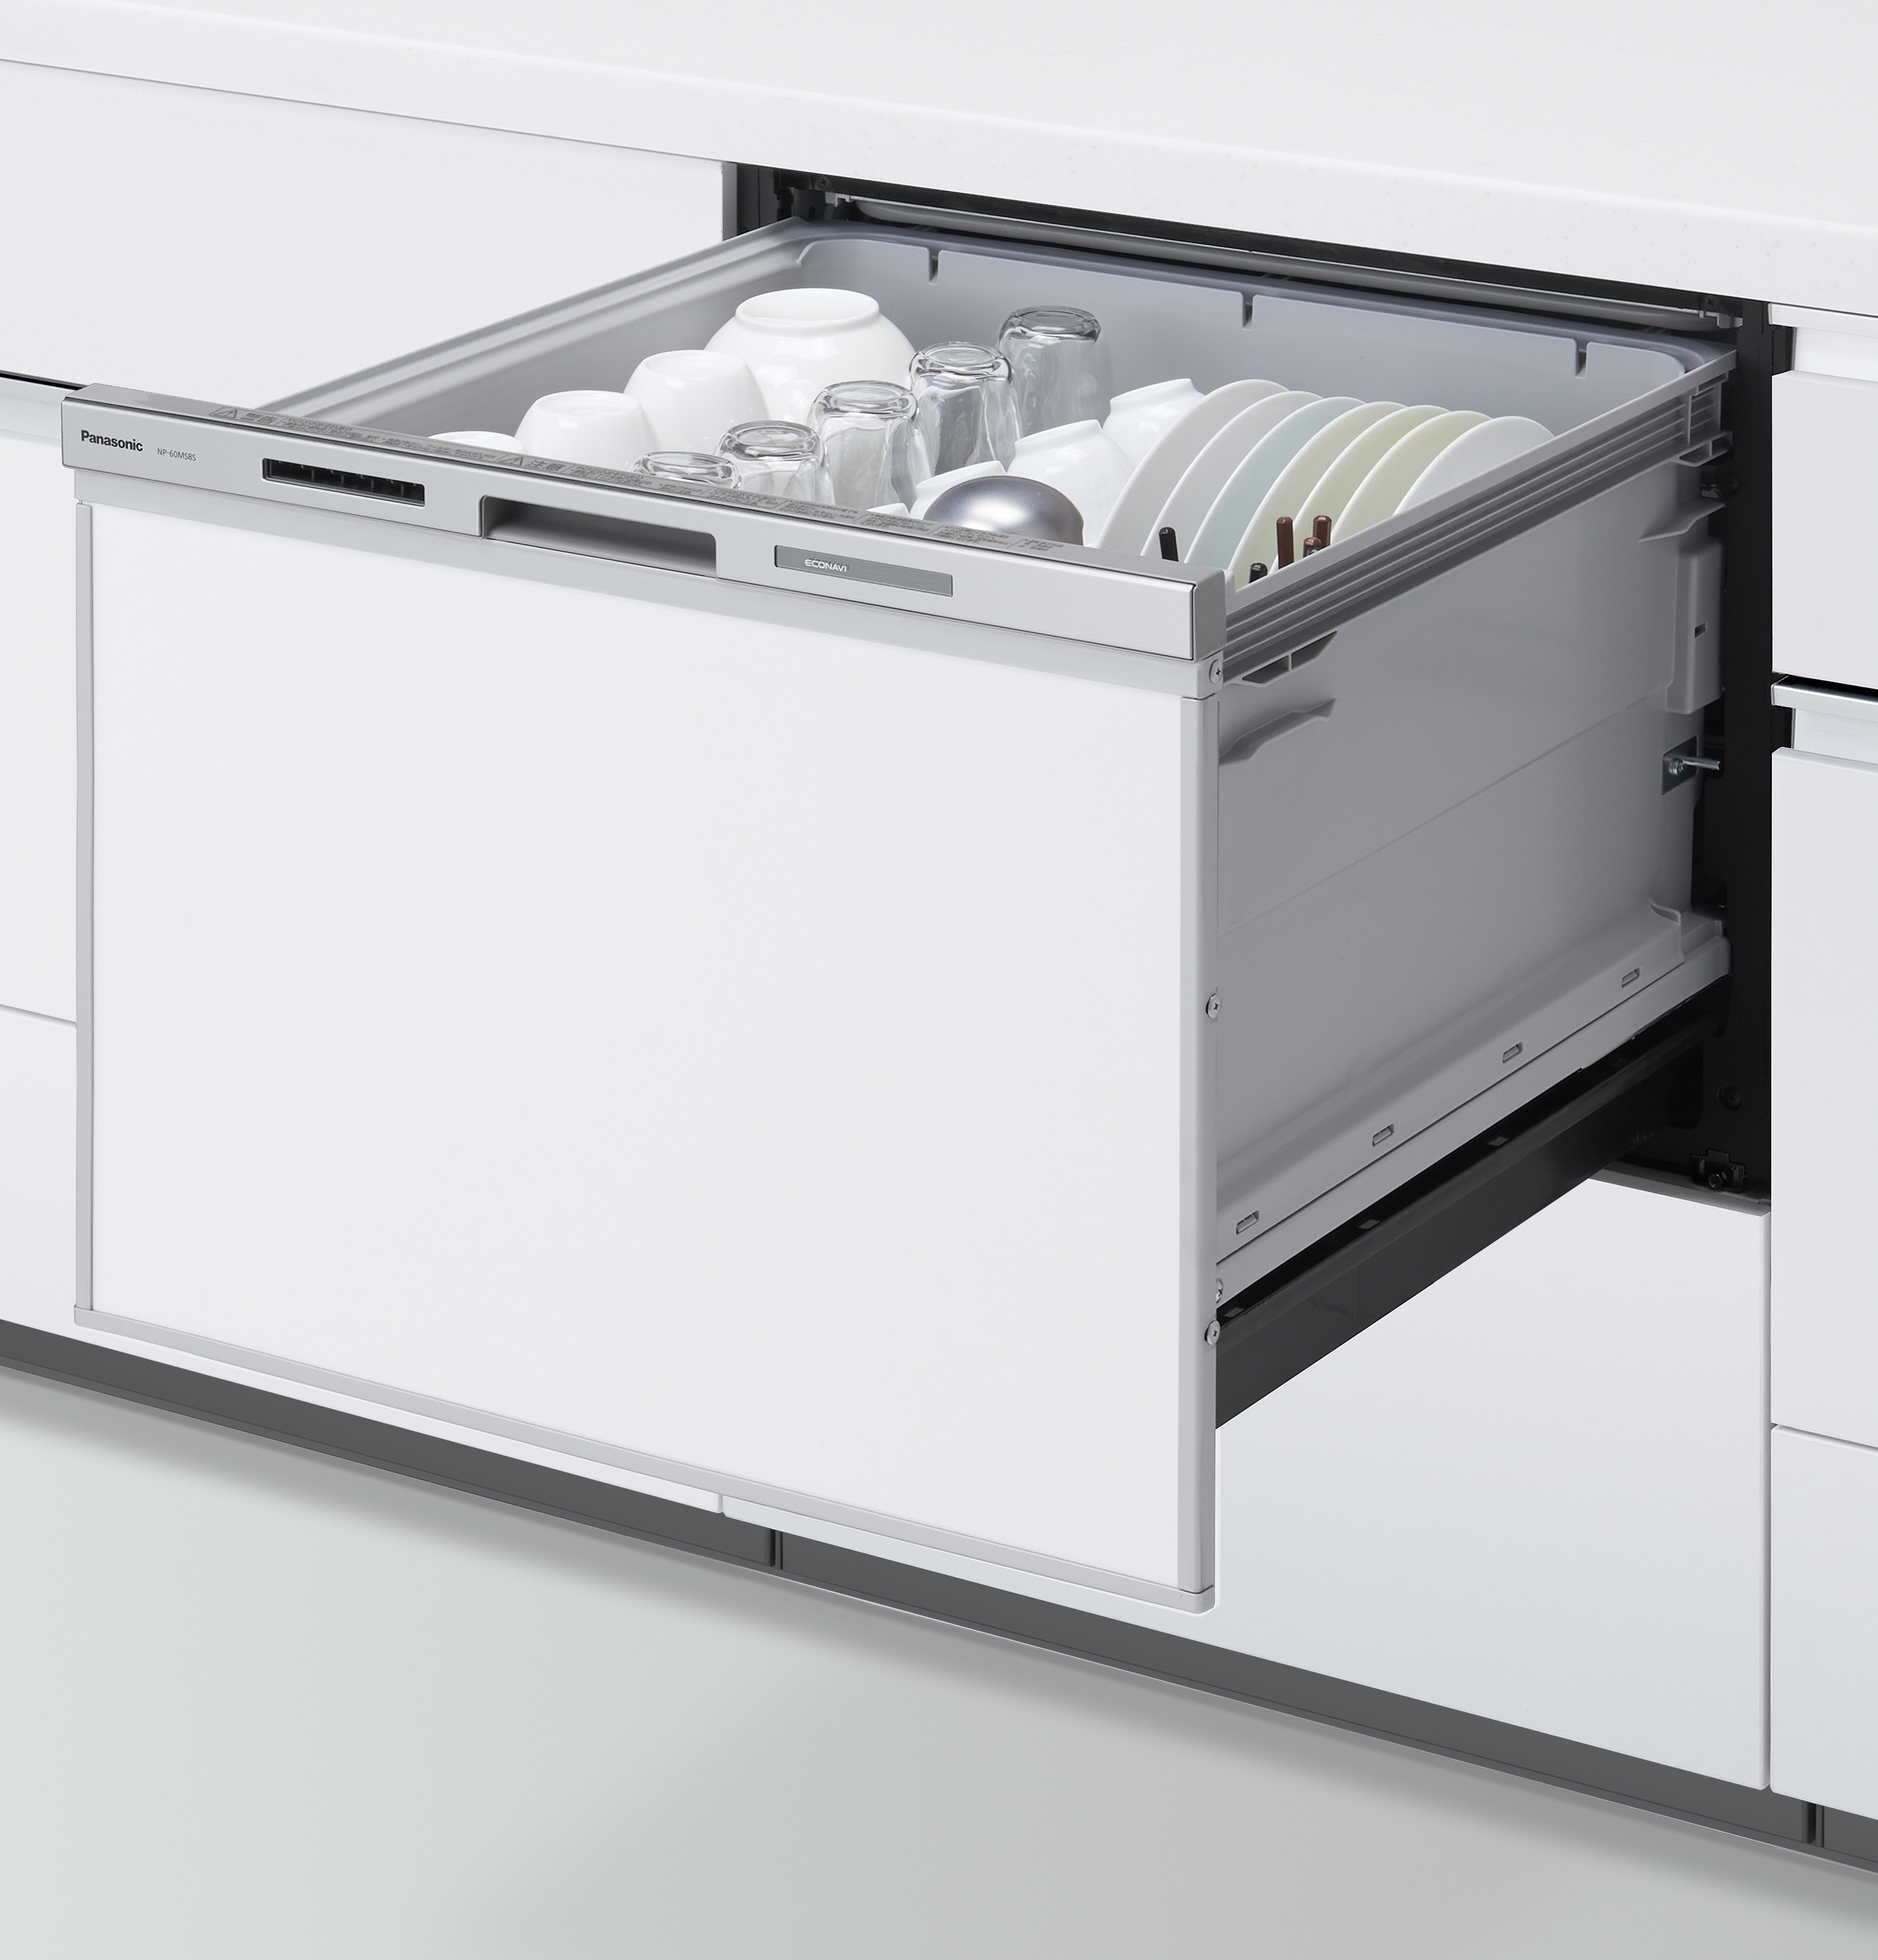 パナソニック ミドルタイプ(幅45cm) ドアパネル型 ビルトイン食器洗い乾燥機 R9シリーズ ベーシックモデル NP-45RS9S（返品や - 3